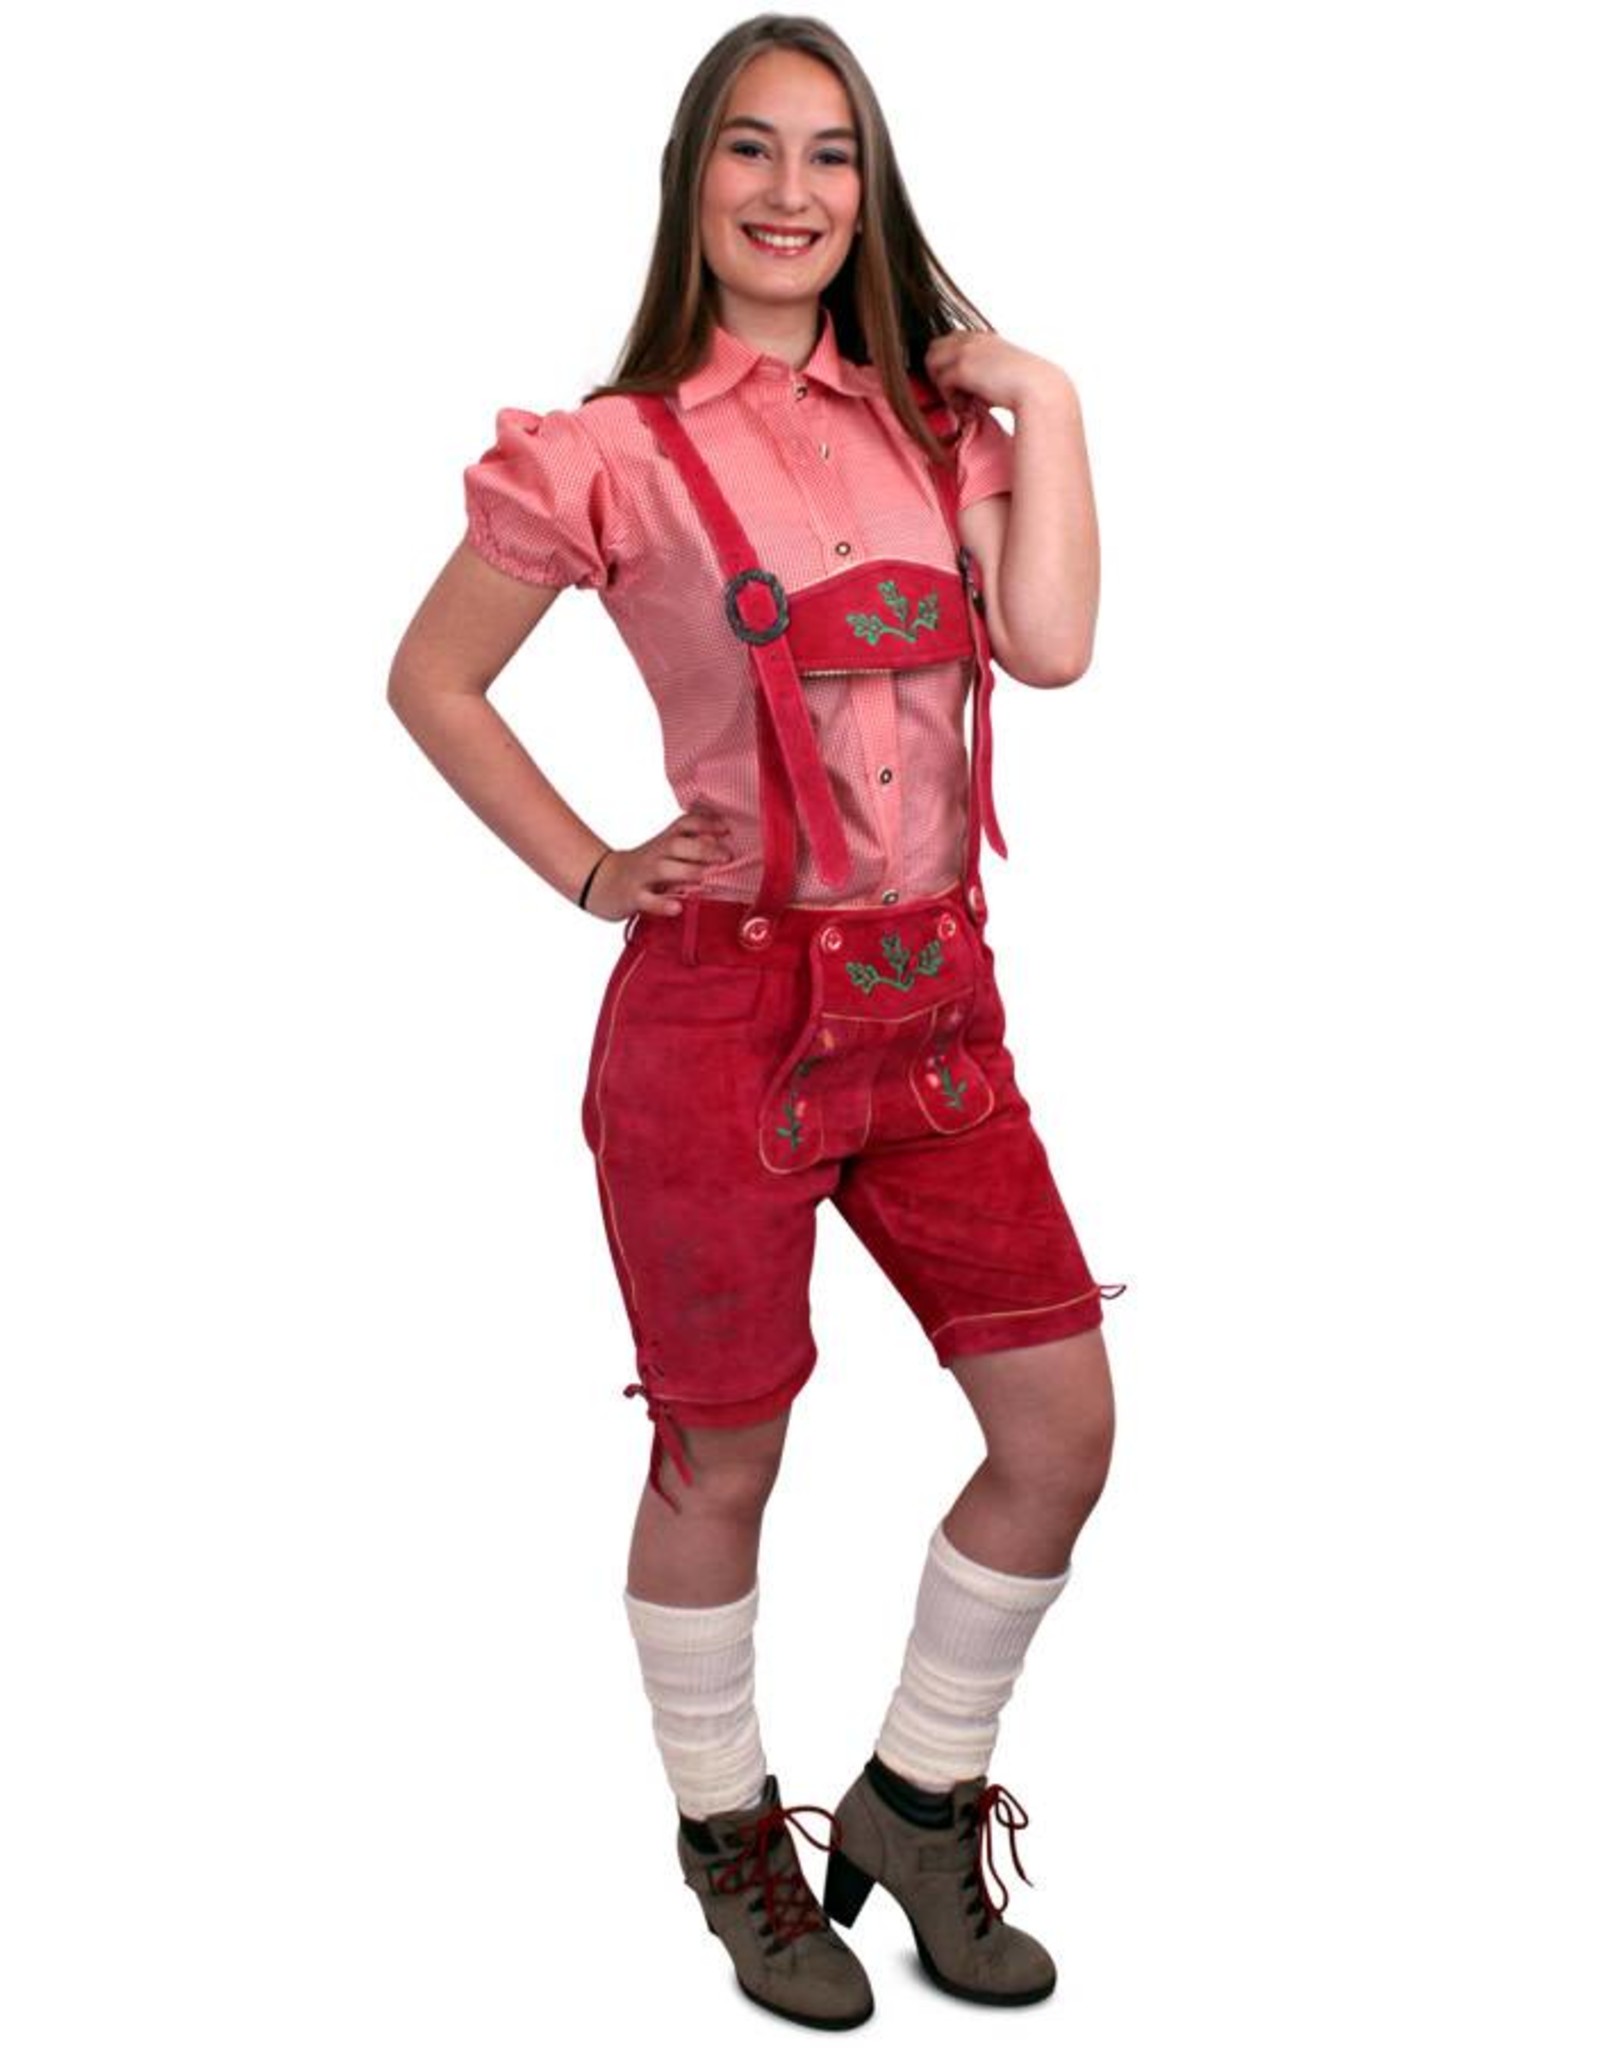 mate Recensie mate Lederhose pink kort model dames - De verkleedzolder, voor al uw  feestartikelen, accessoires, verhuur en verkoop van kleding, feestkleding  en kostuums voor uw themafeest of gala.